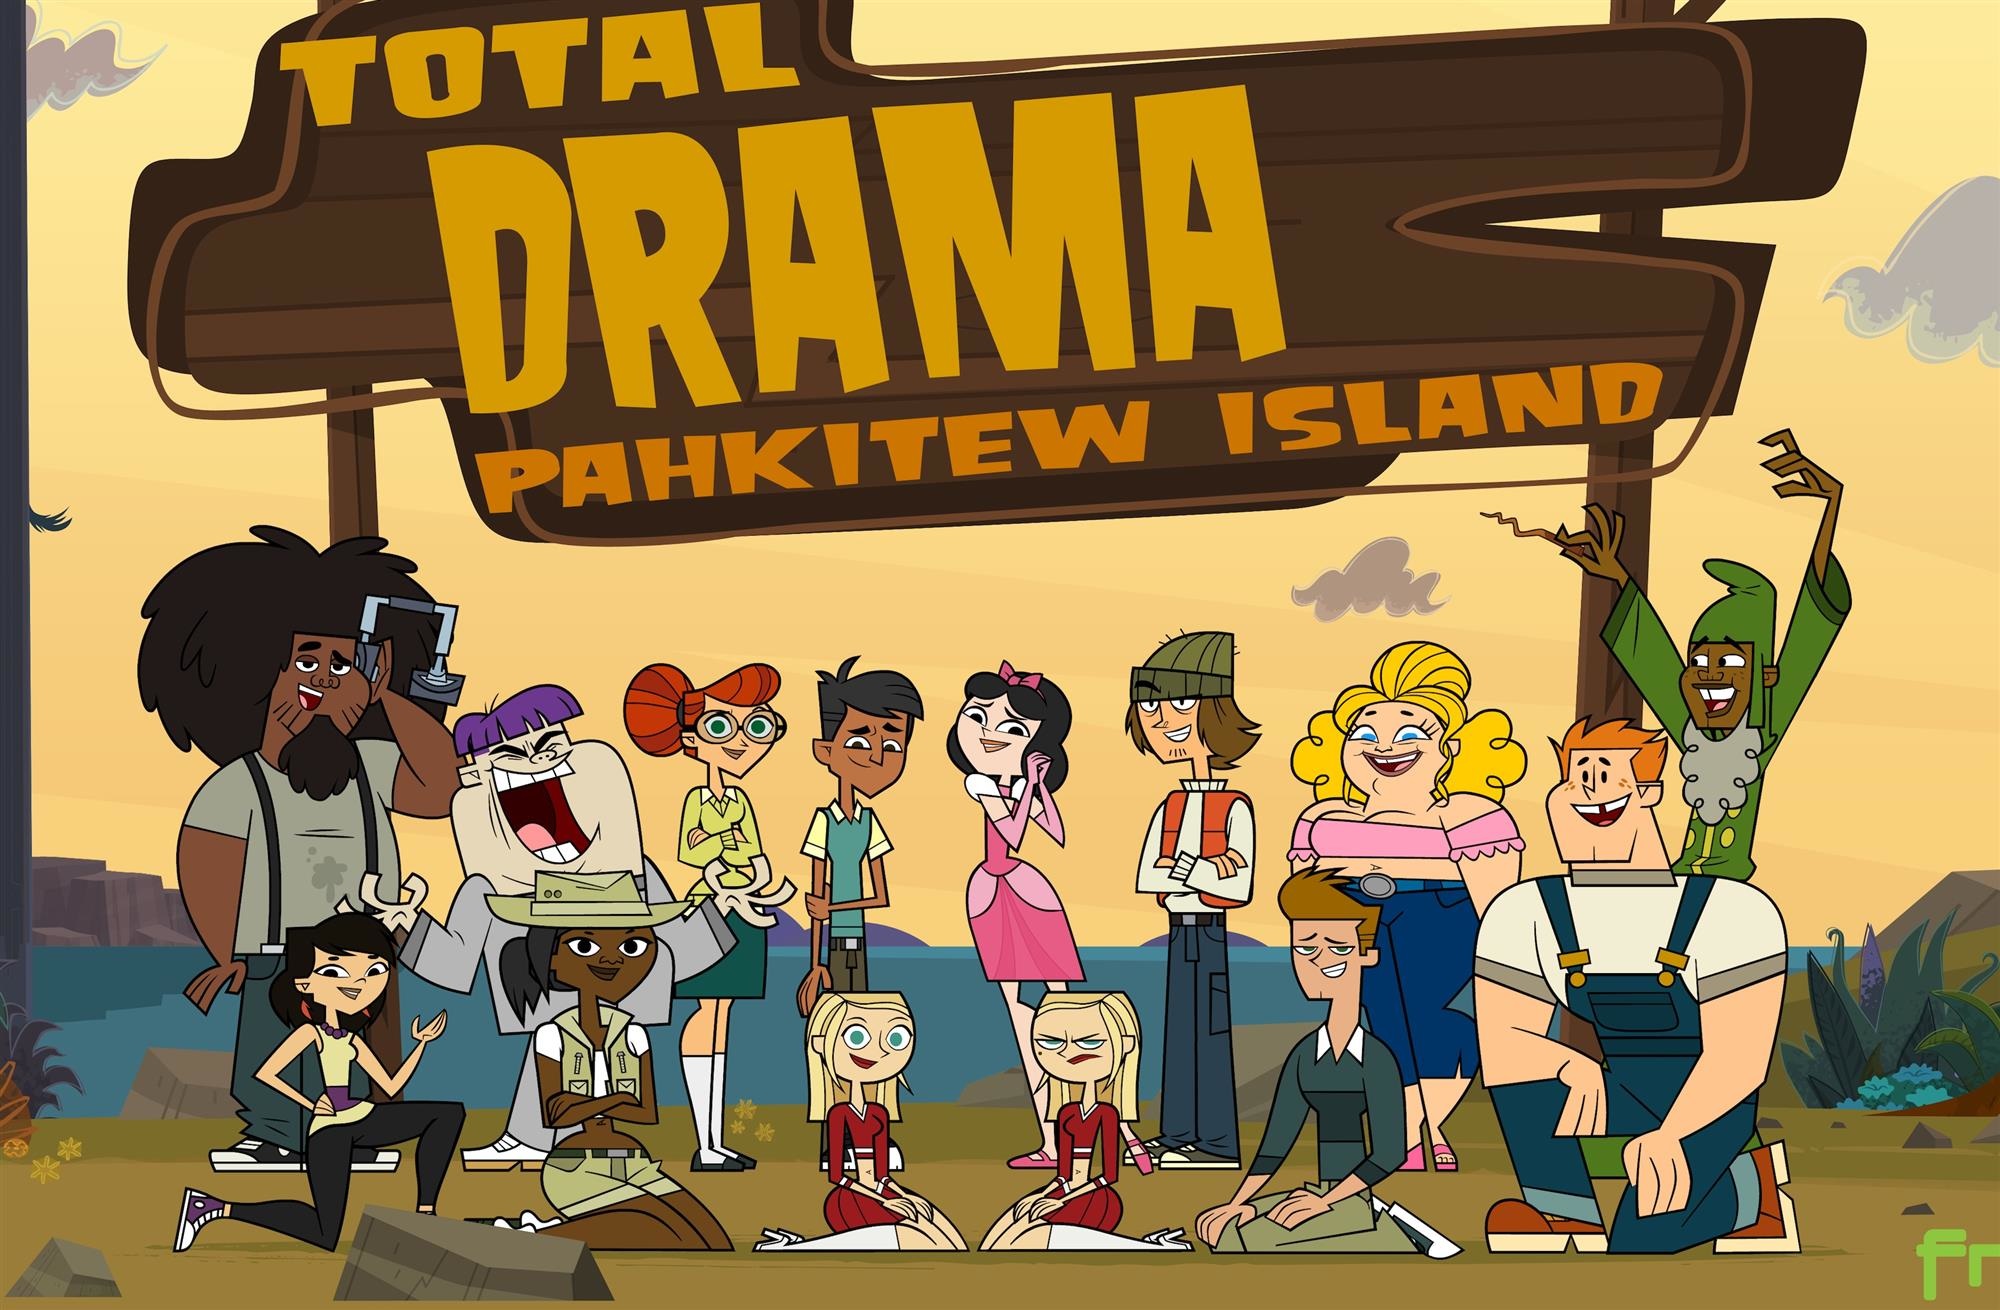  Drama Total Kids estreia no Cartoon Network